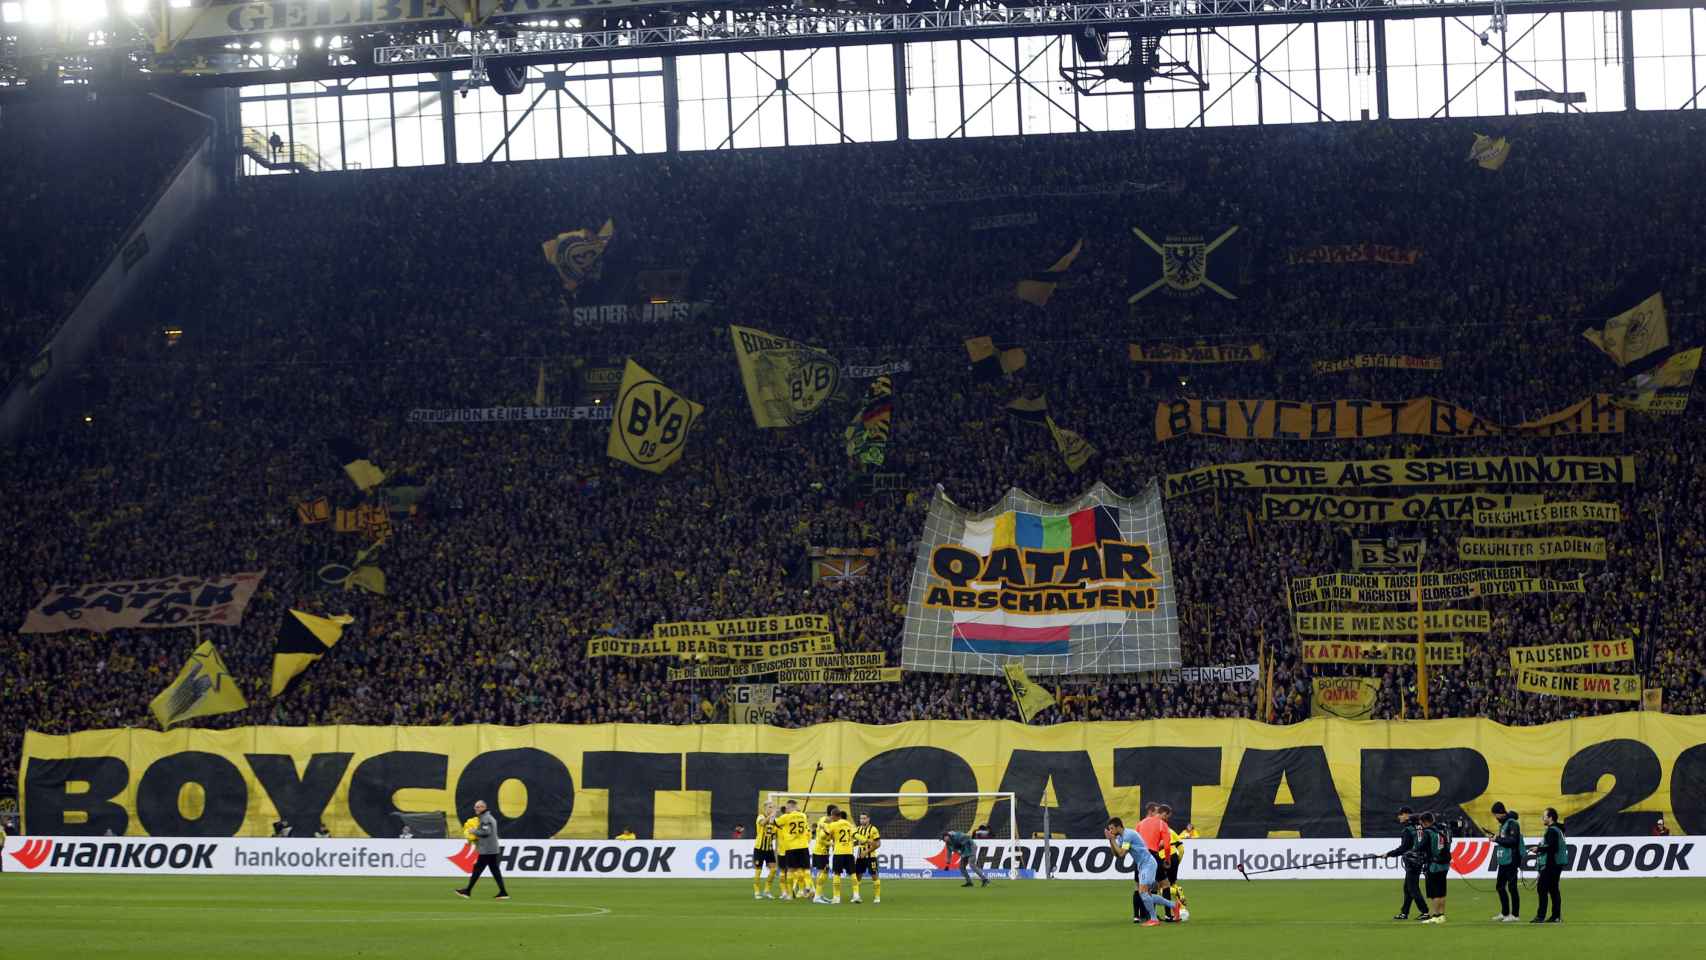 La grada de animación del Borussia Dortmund pide el boicot a Qatar 2022.